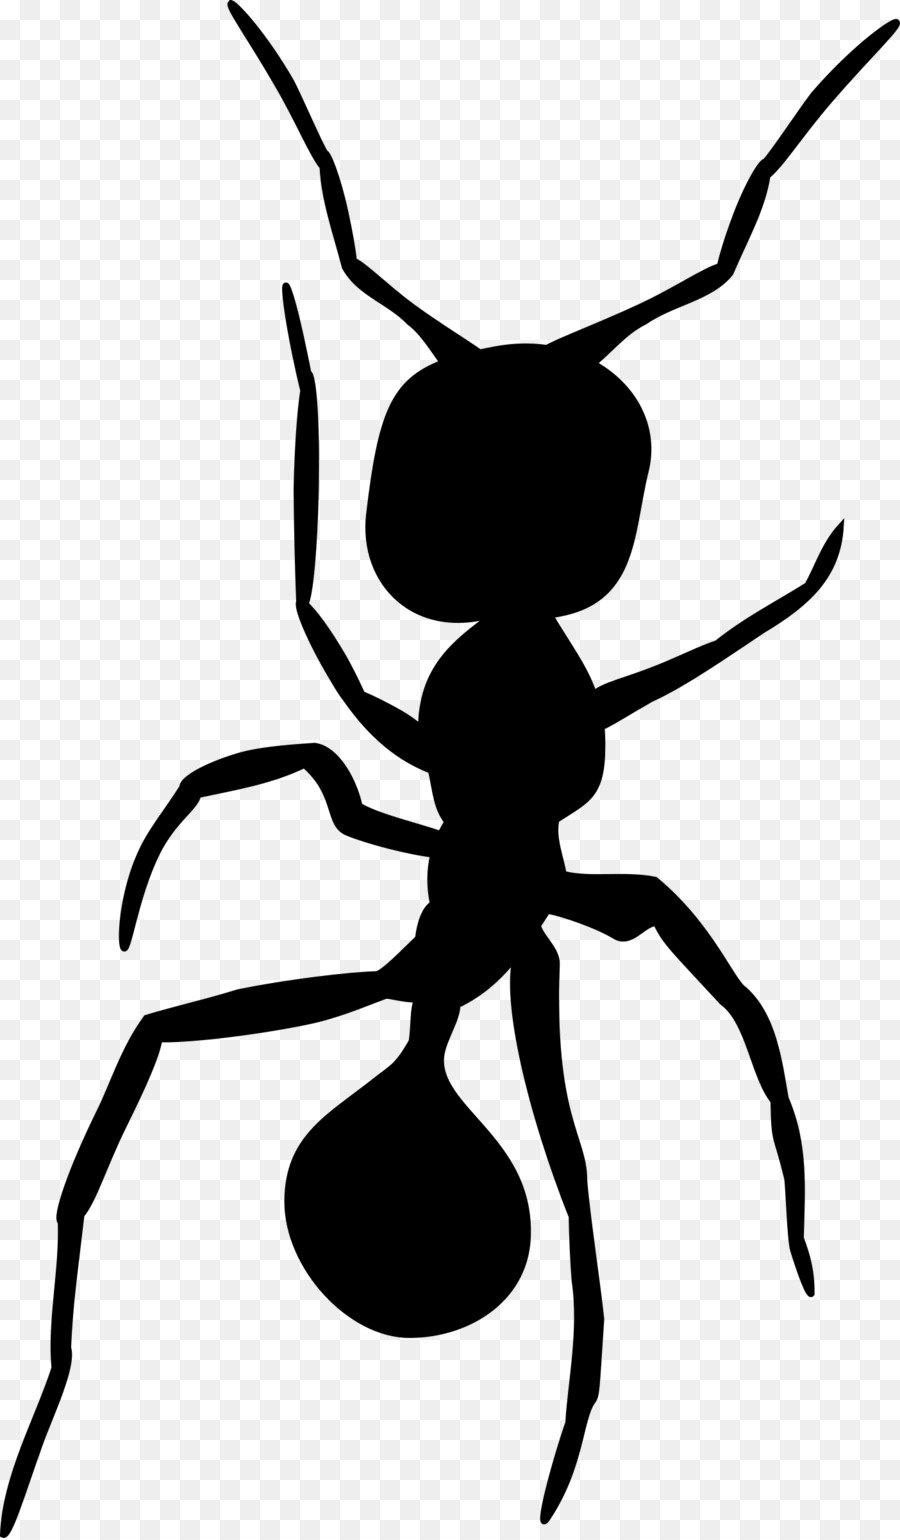 Ameise, Insekt Silhouette Clip art - Ameisen